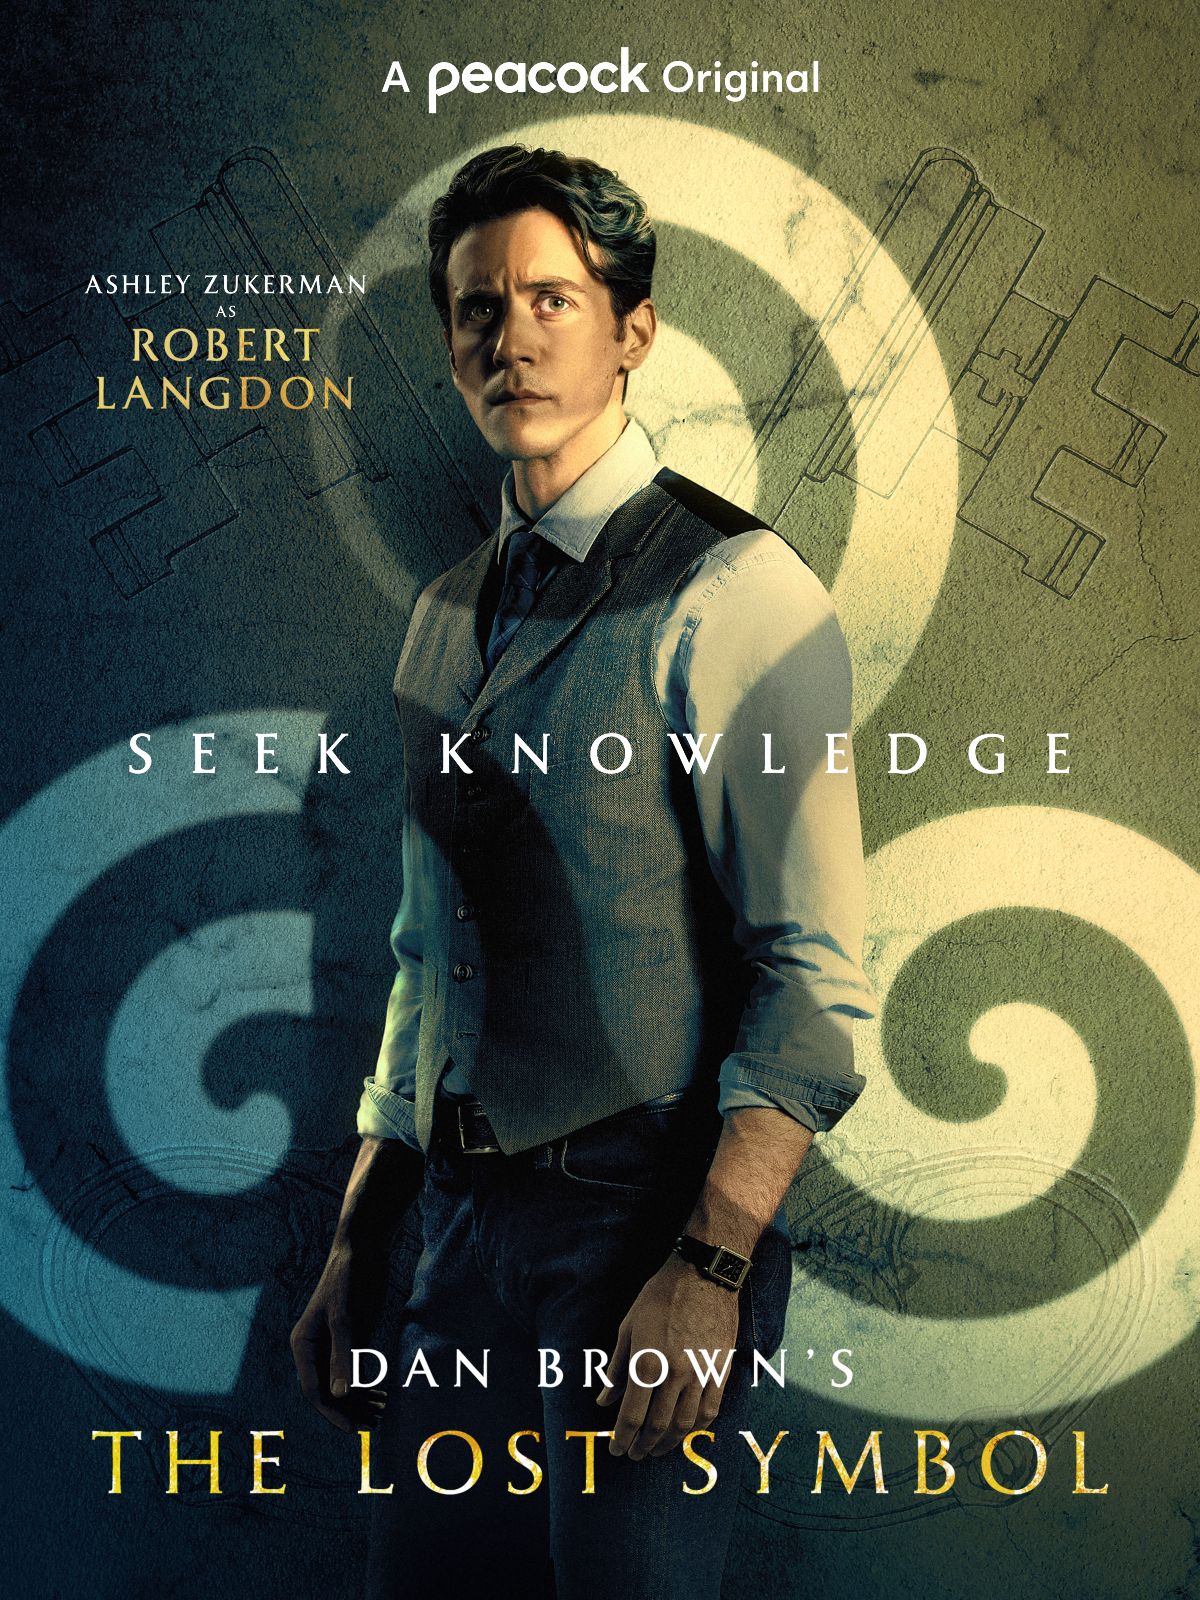 dan-brown-the-lost-symbol-langdon-poster